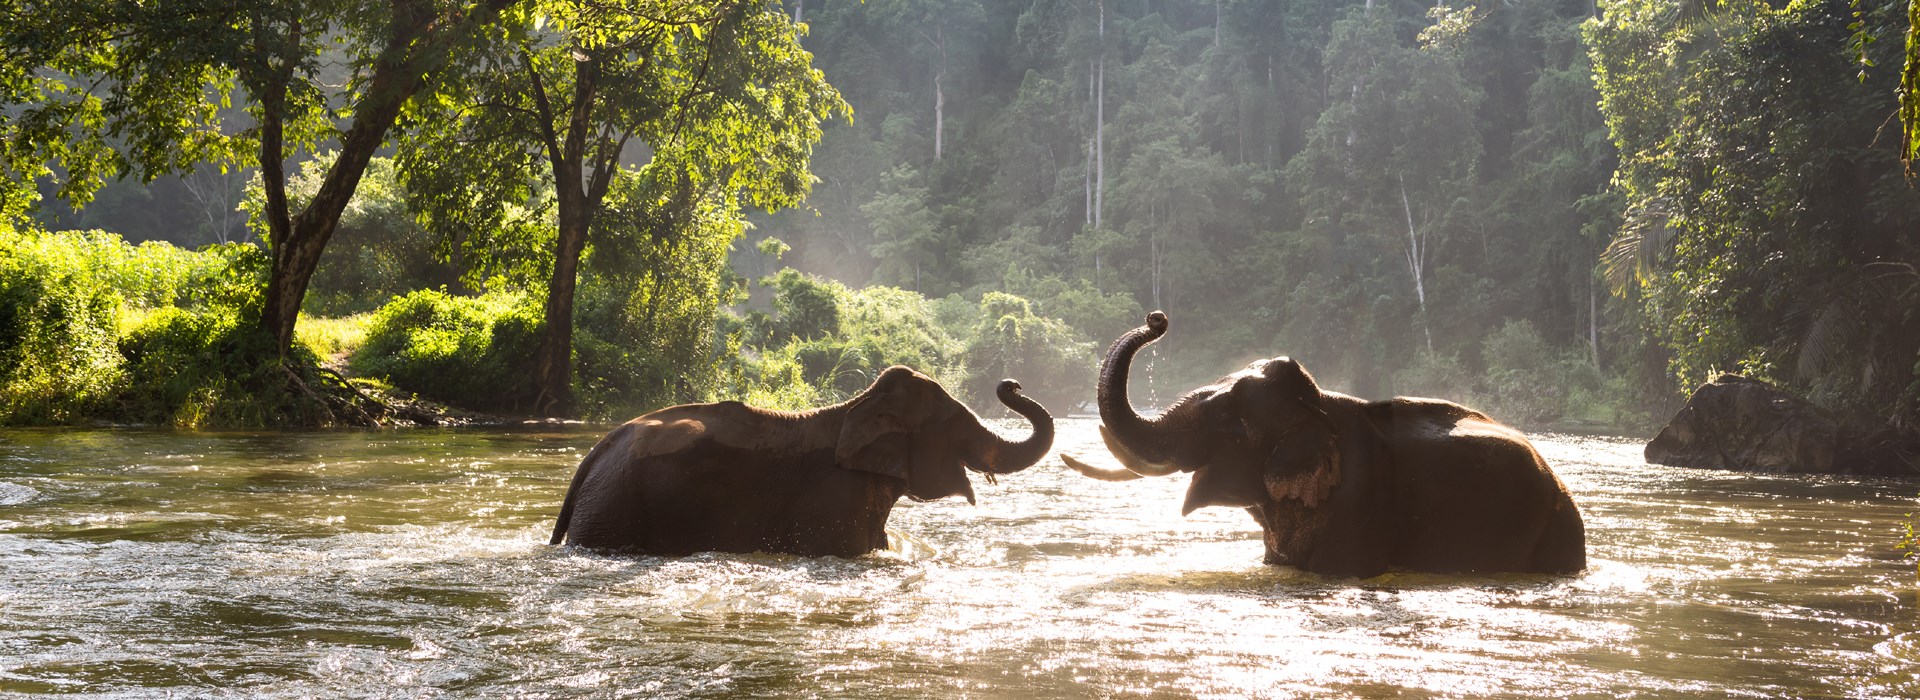 Visiter Un sanctuaire pour éléphants - Thaïlande